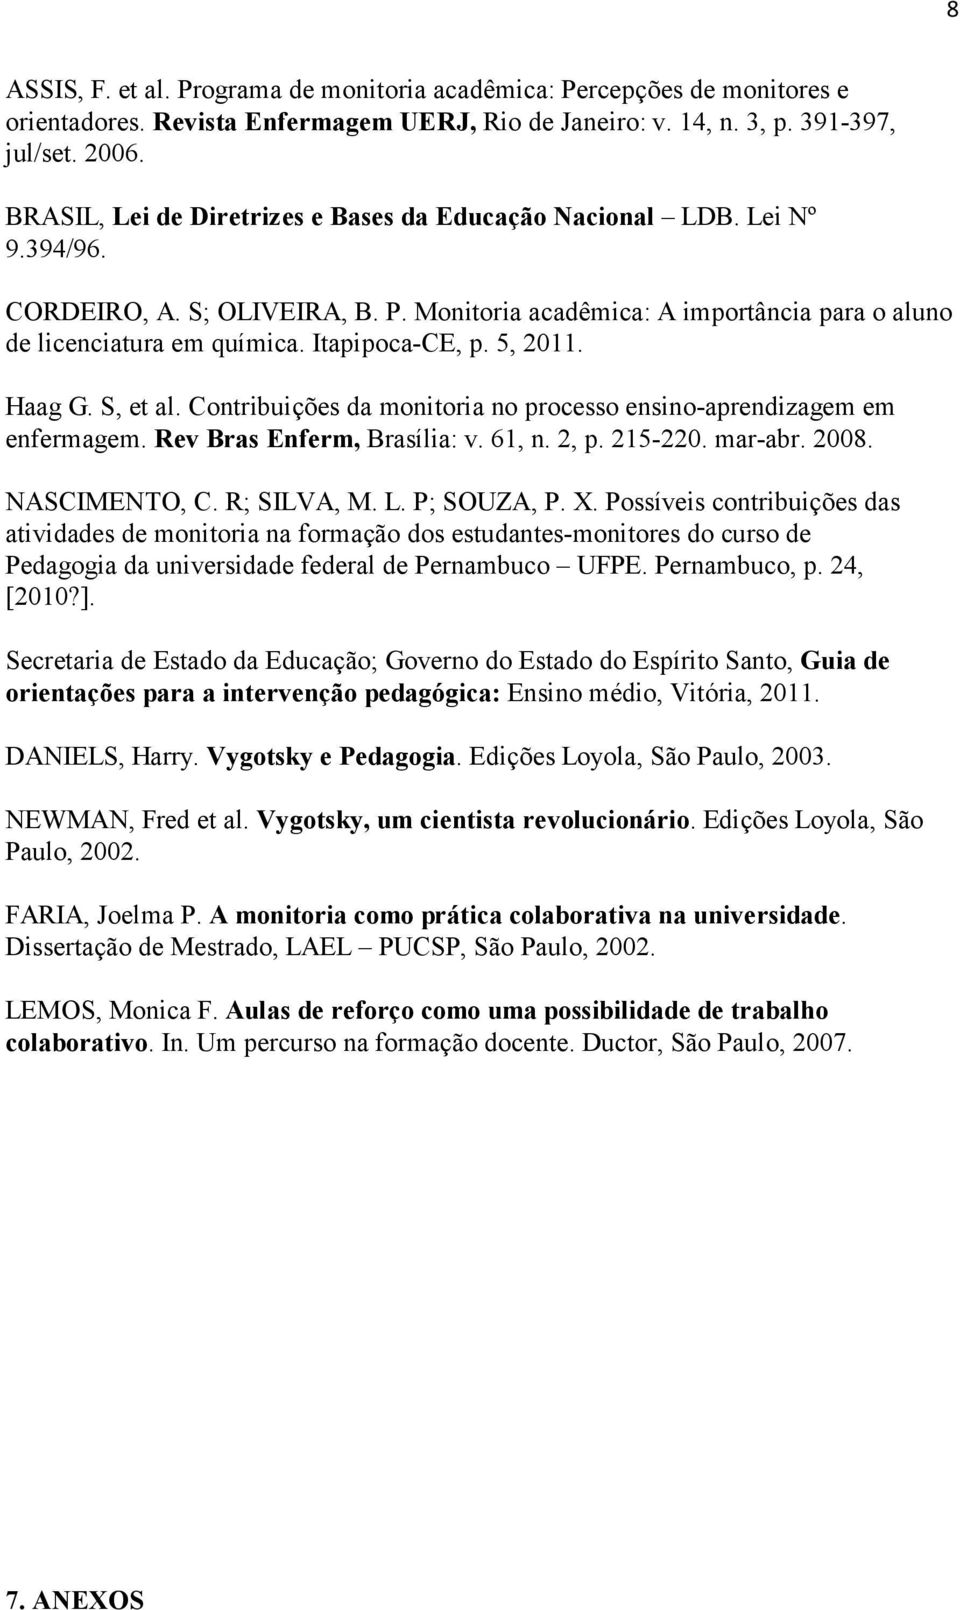 Itapipoca-CE, p. 5, 2011. Haag G. S, et al. Contribuições da monitoria no processo ensino-aprendizagem em enfermagem. Rev Bras Enferm, Brasília: v. 61, n. 2, p. 215-220. mar-abr. 2008. NASCIMENTO, C.